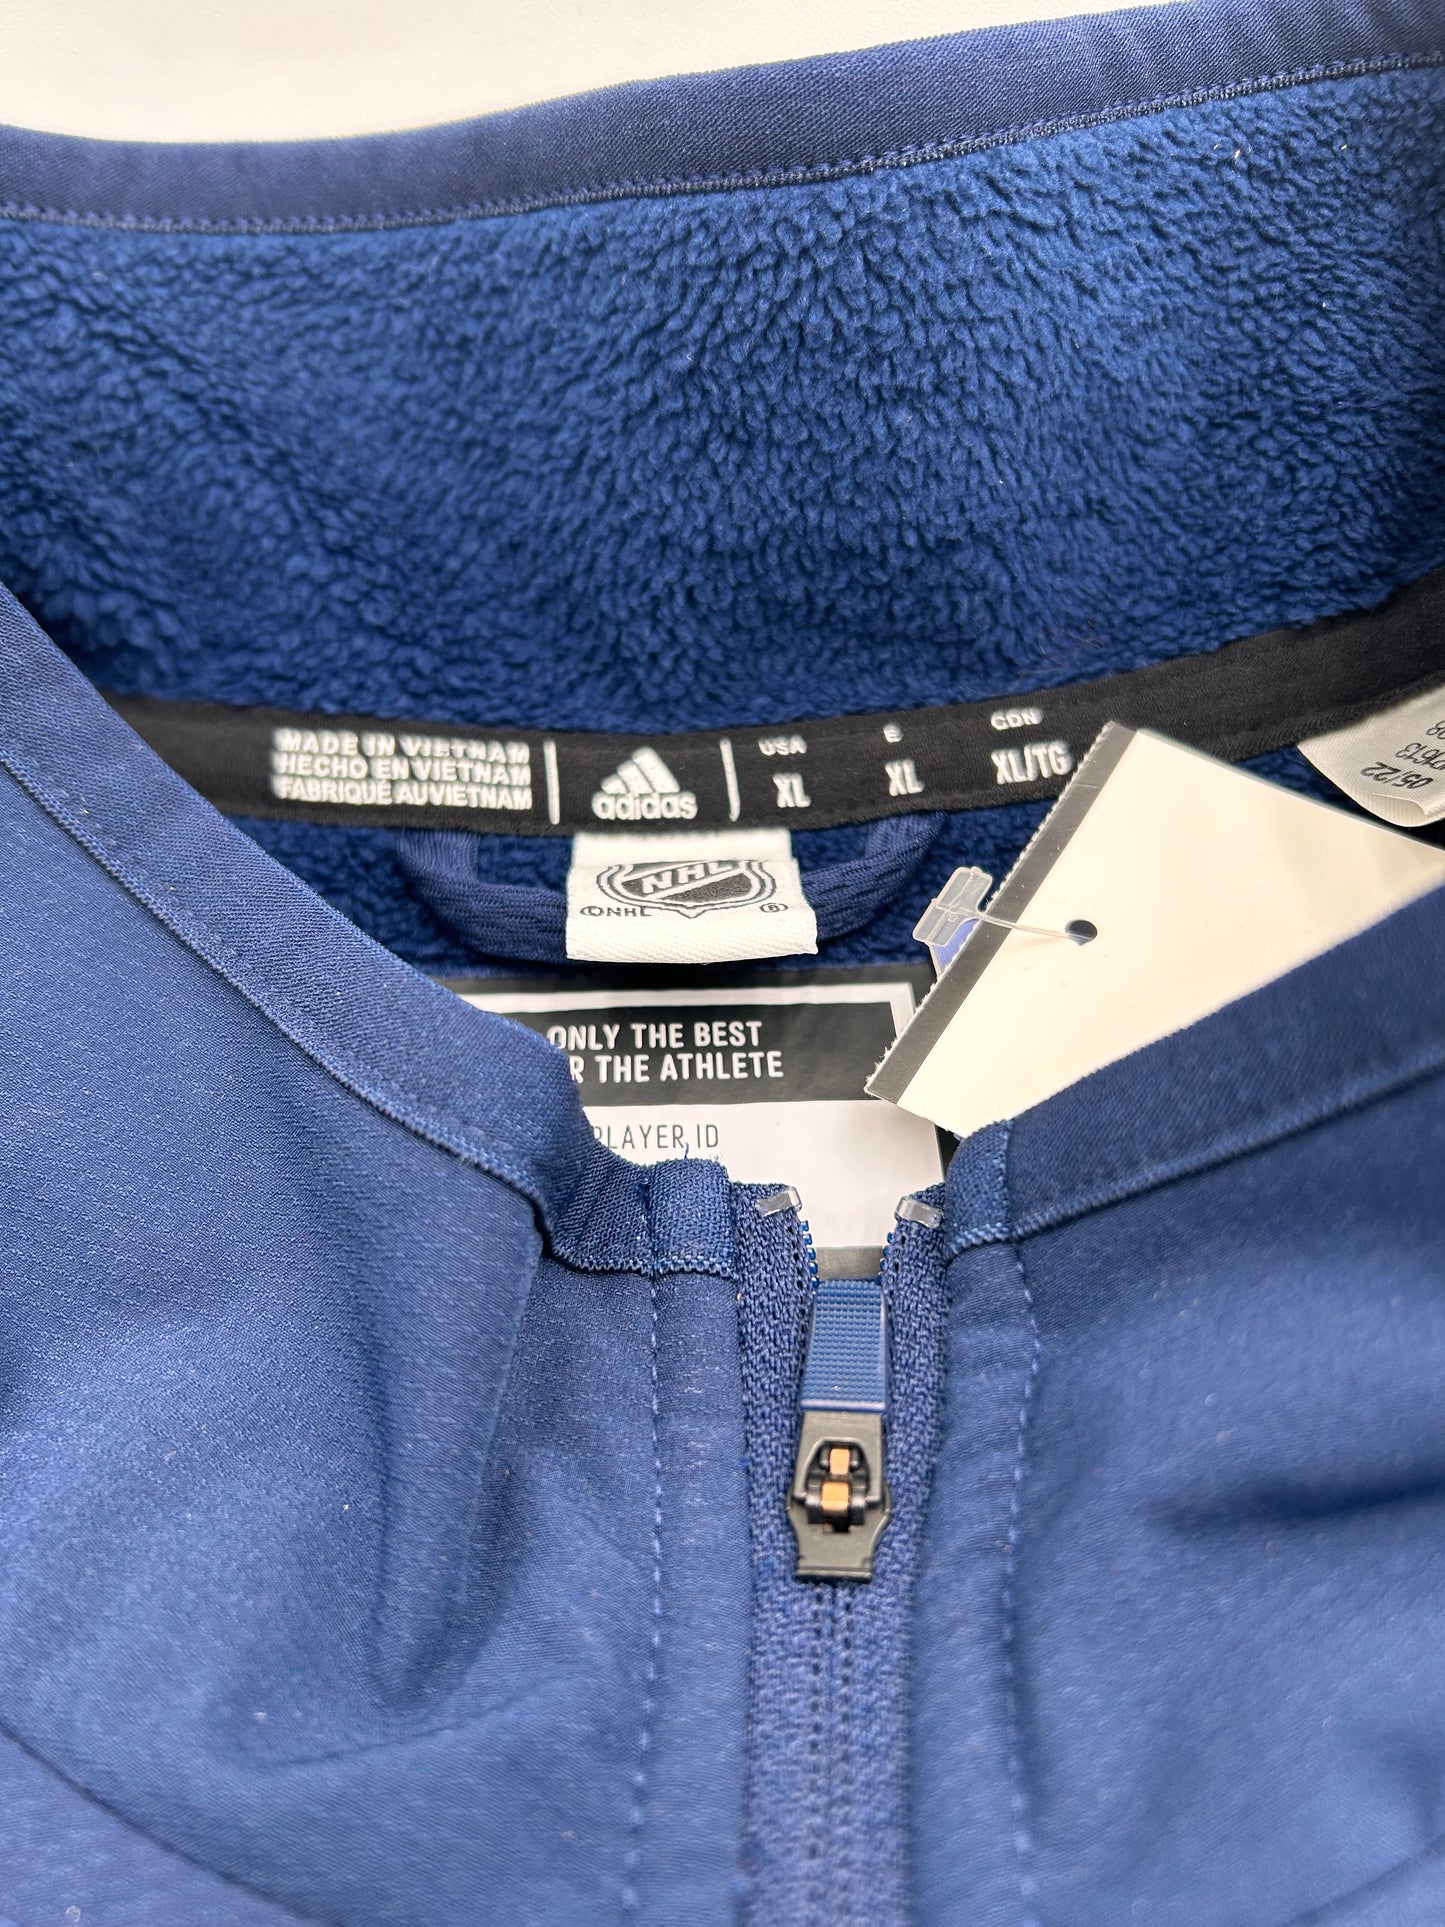 Colorado Avalanche Blue Adidas 1/4 Zip Jacket